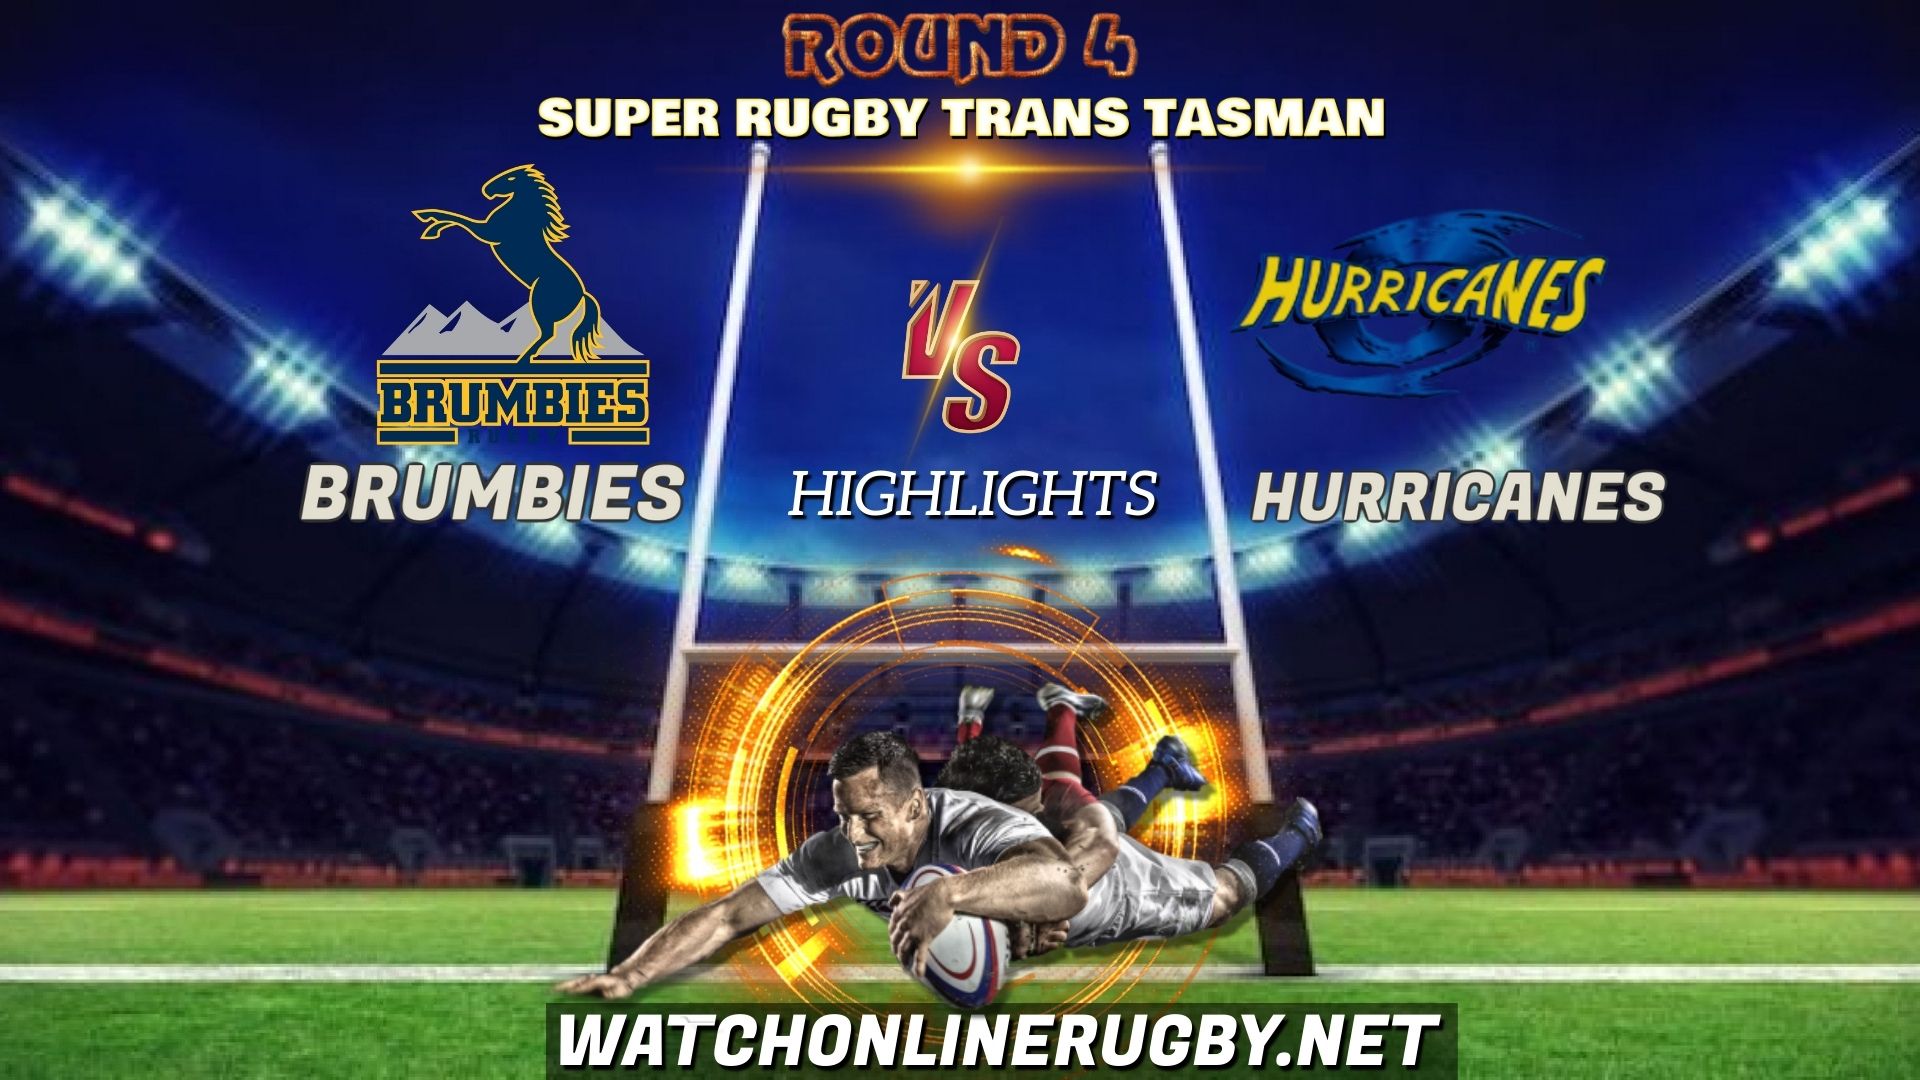 Brumbies Vs Hurricanes Super Rugby Trans Tasman 2021 RD 4